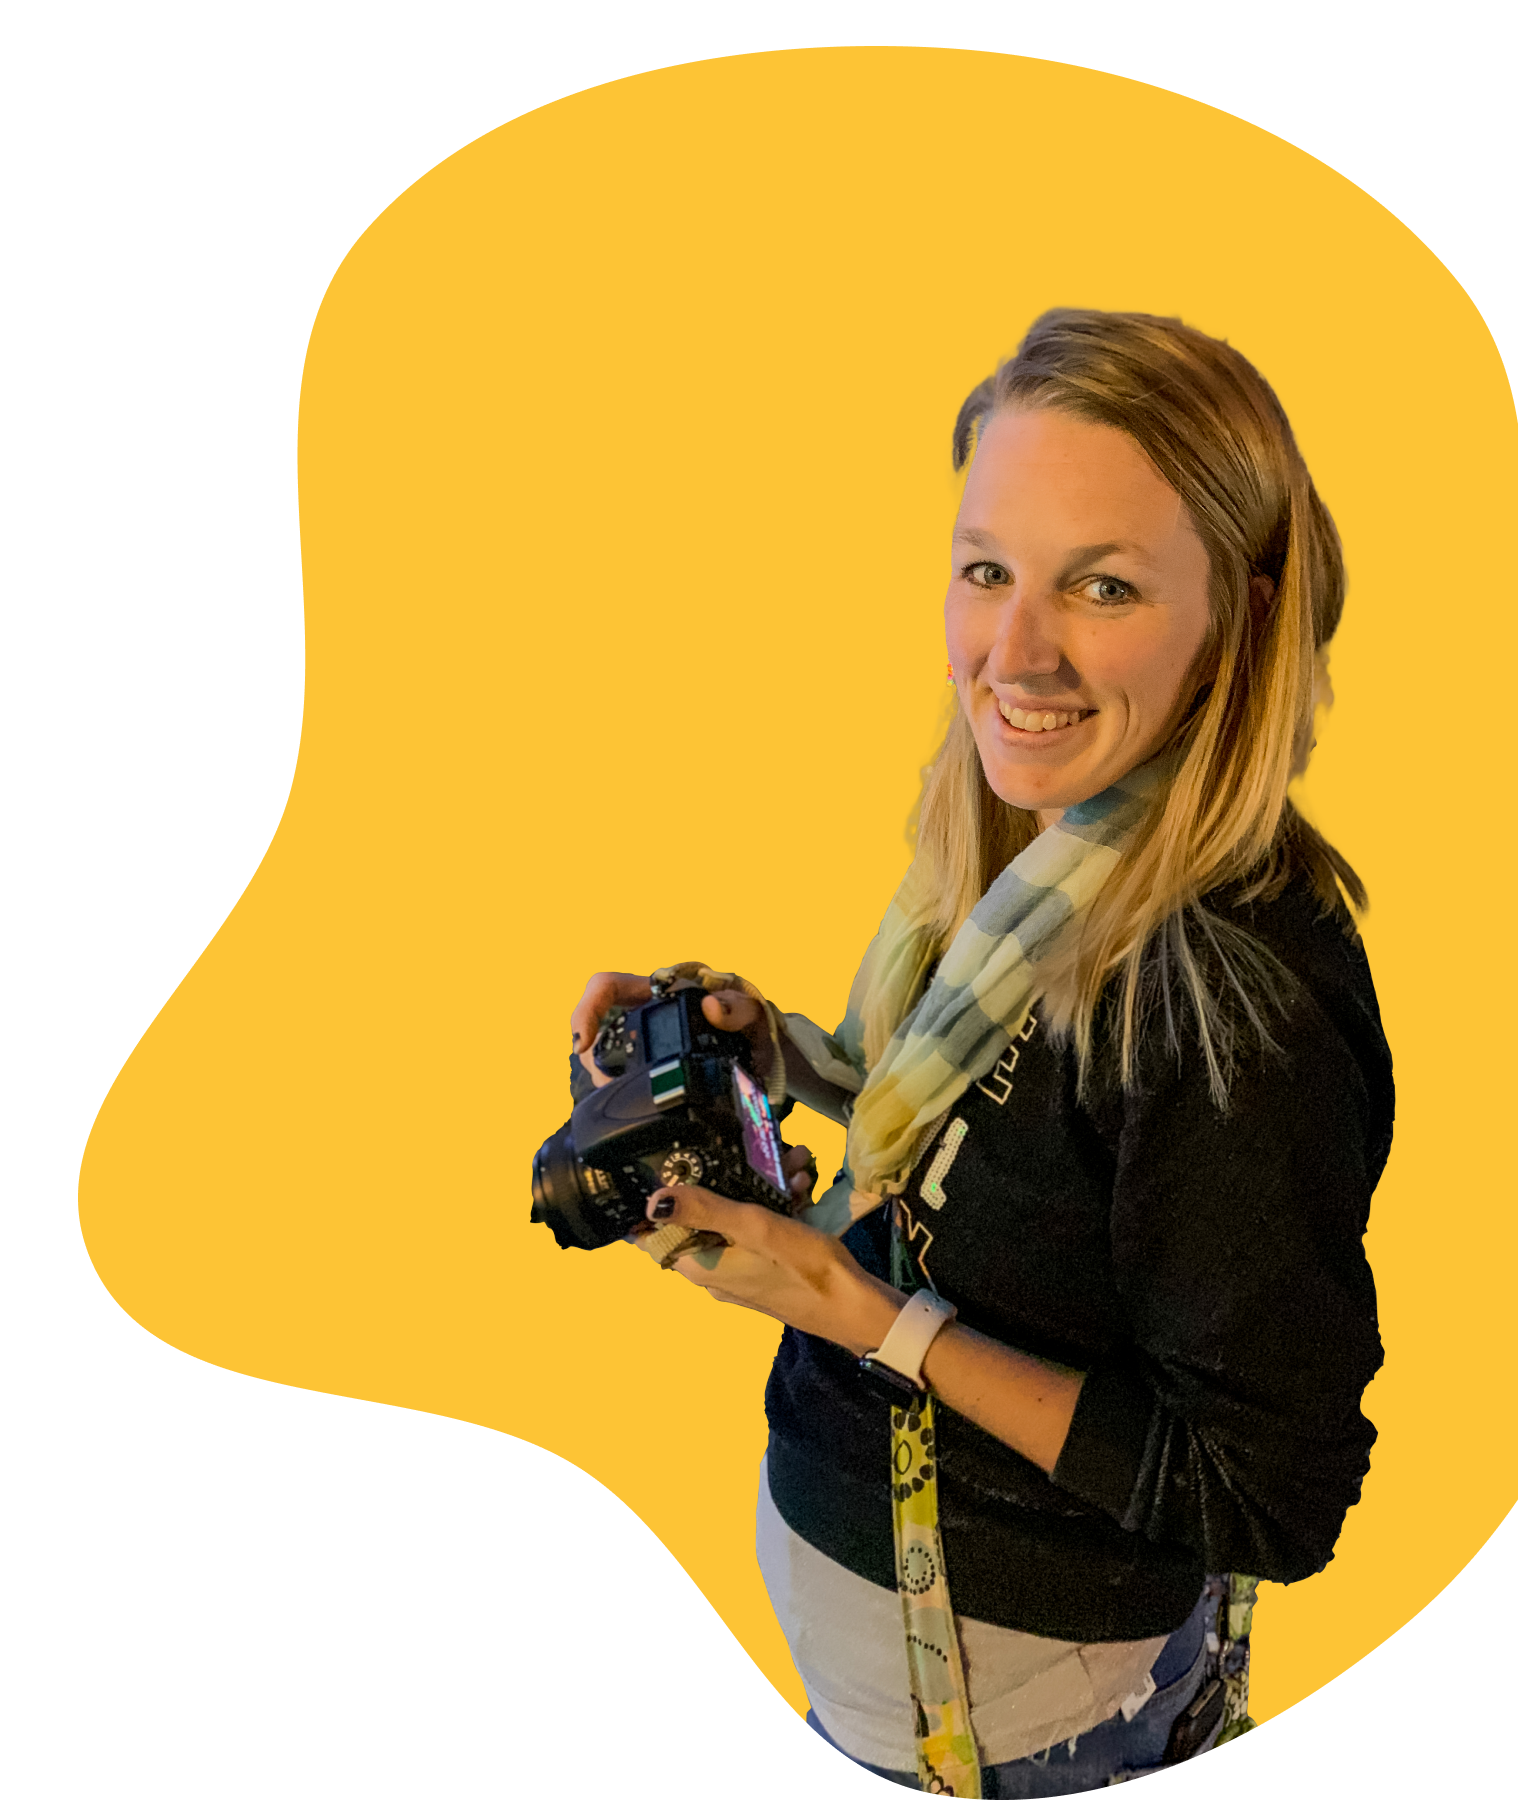 Image of Amanda Dobias with yellow background